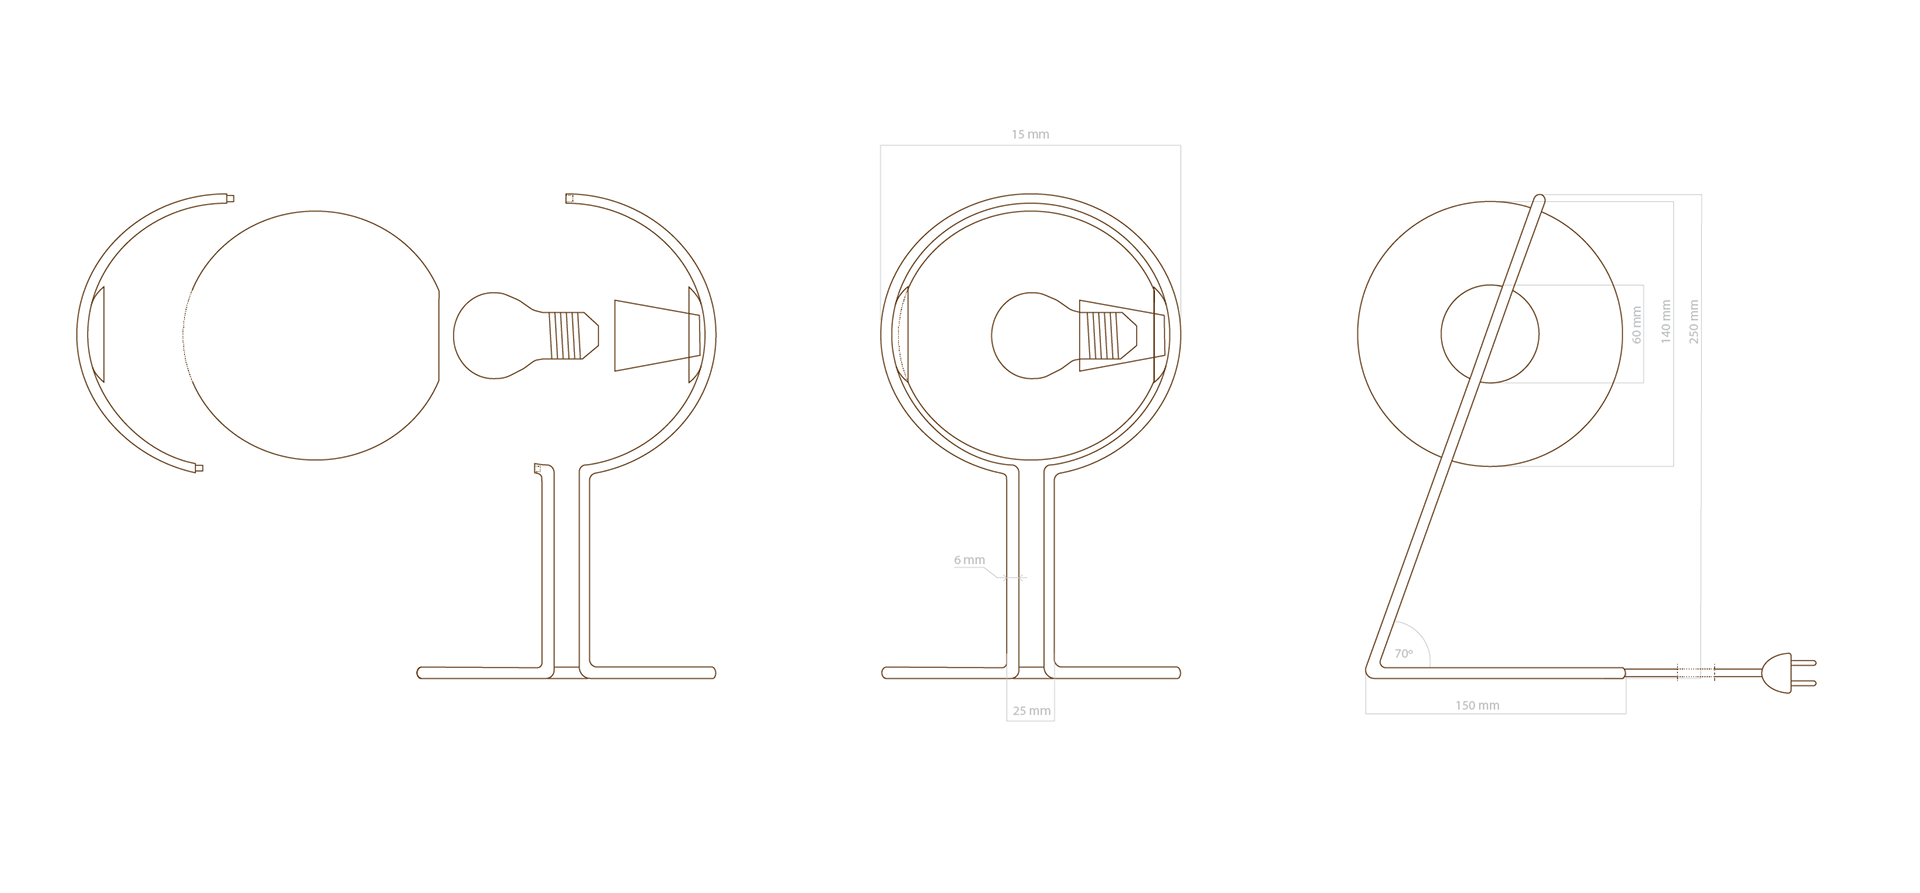 glo一款简约的设计台灯适用于任何室内